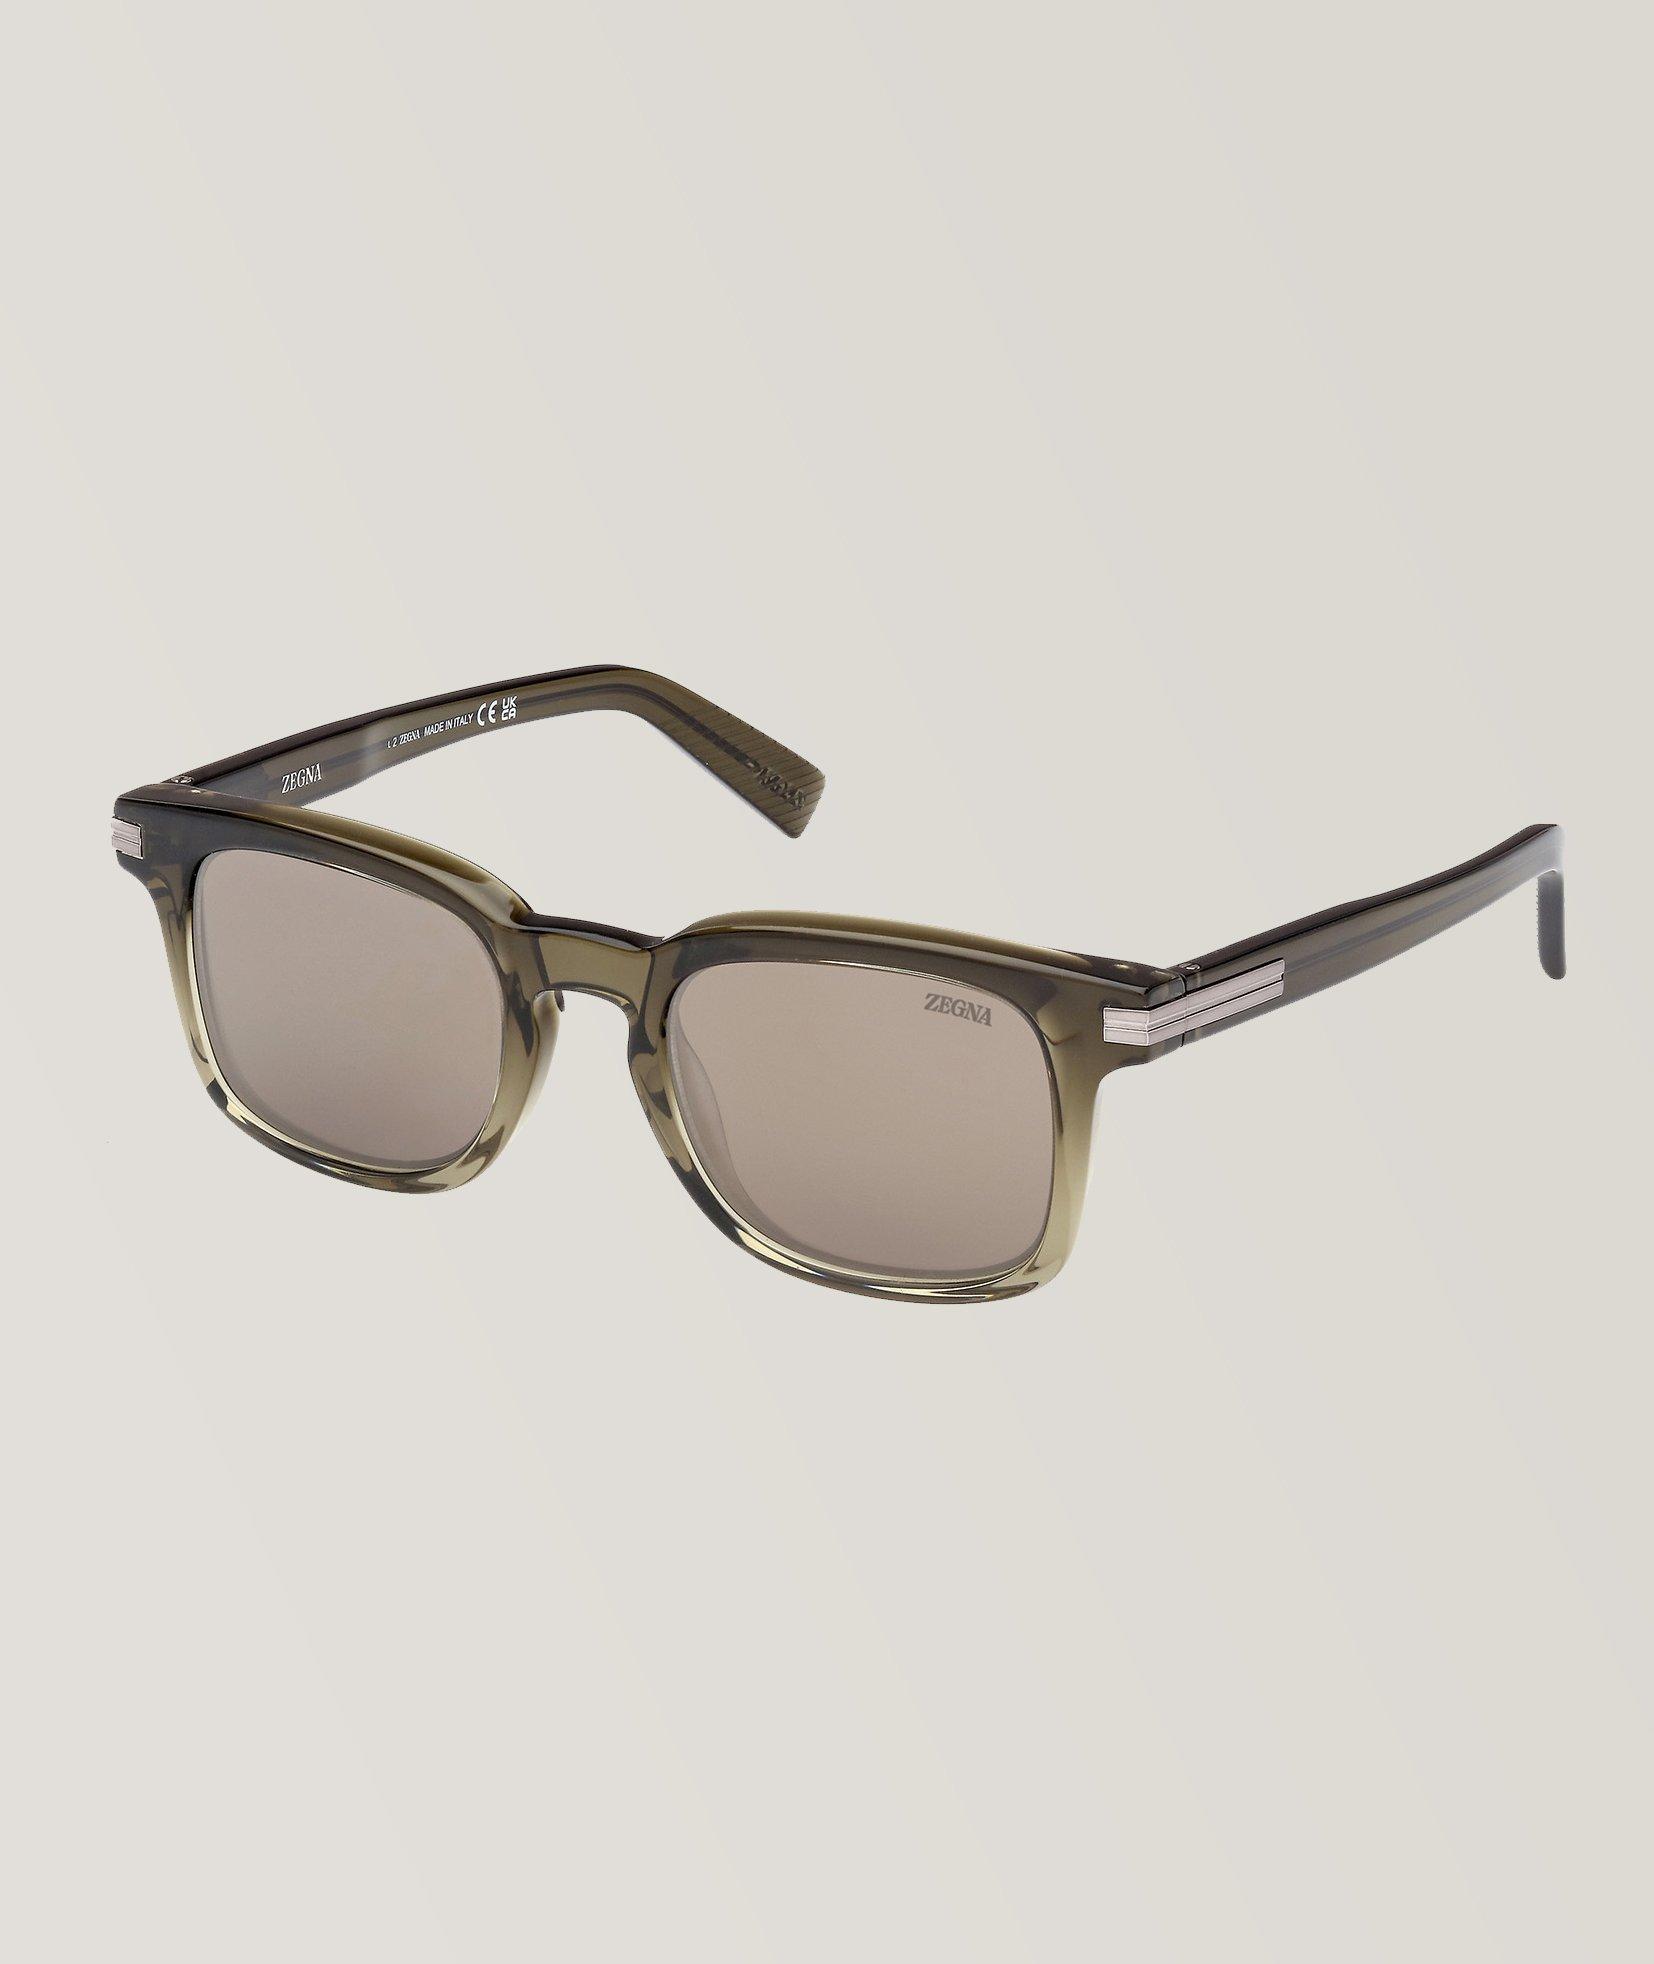 Zegna Transparent Acetate Square Sunglasses